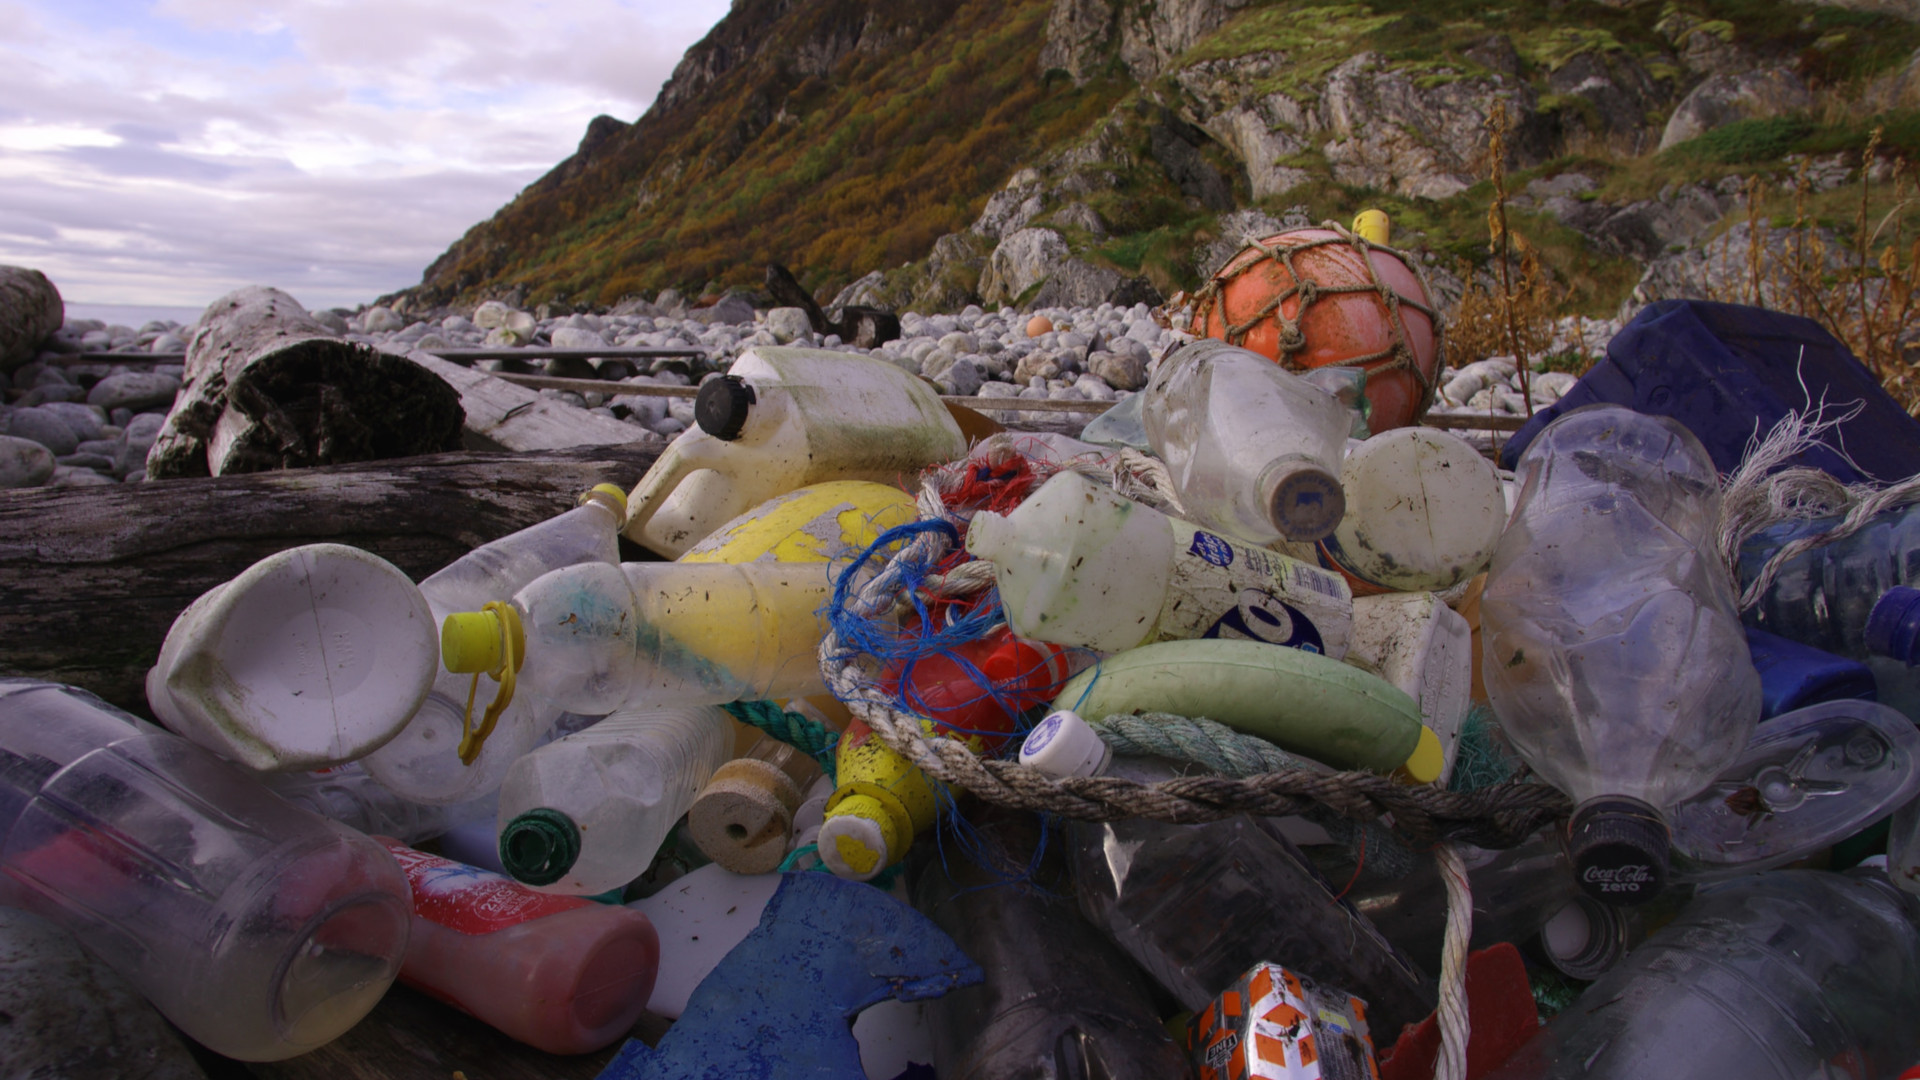 Ocean plastic pollution